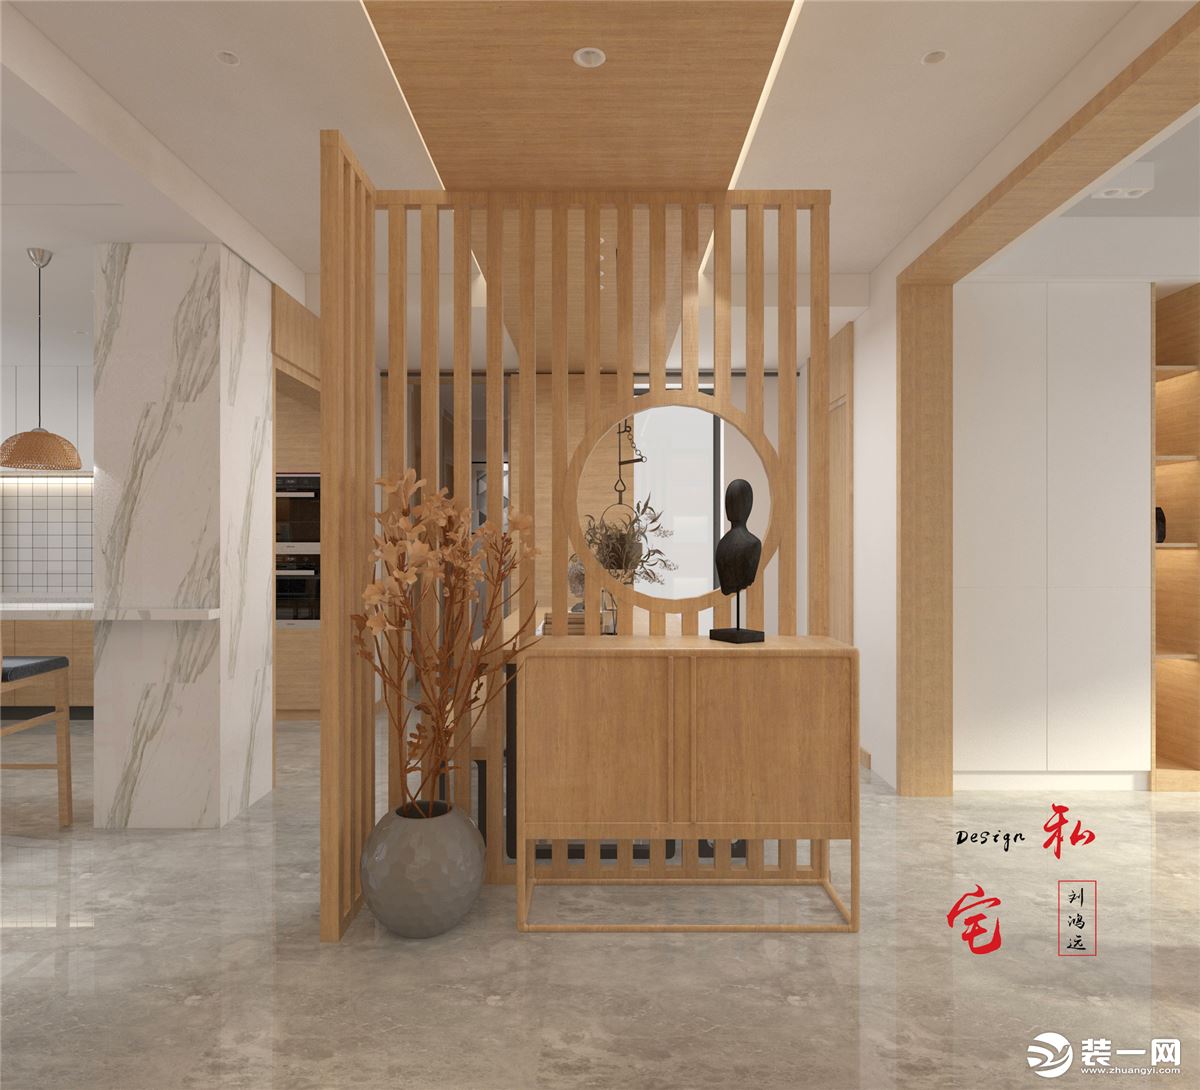 此作品为160㎡+平层结构，此作品为三室两厅一厨三卫平层结构，整体基调为日式